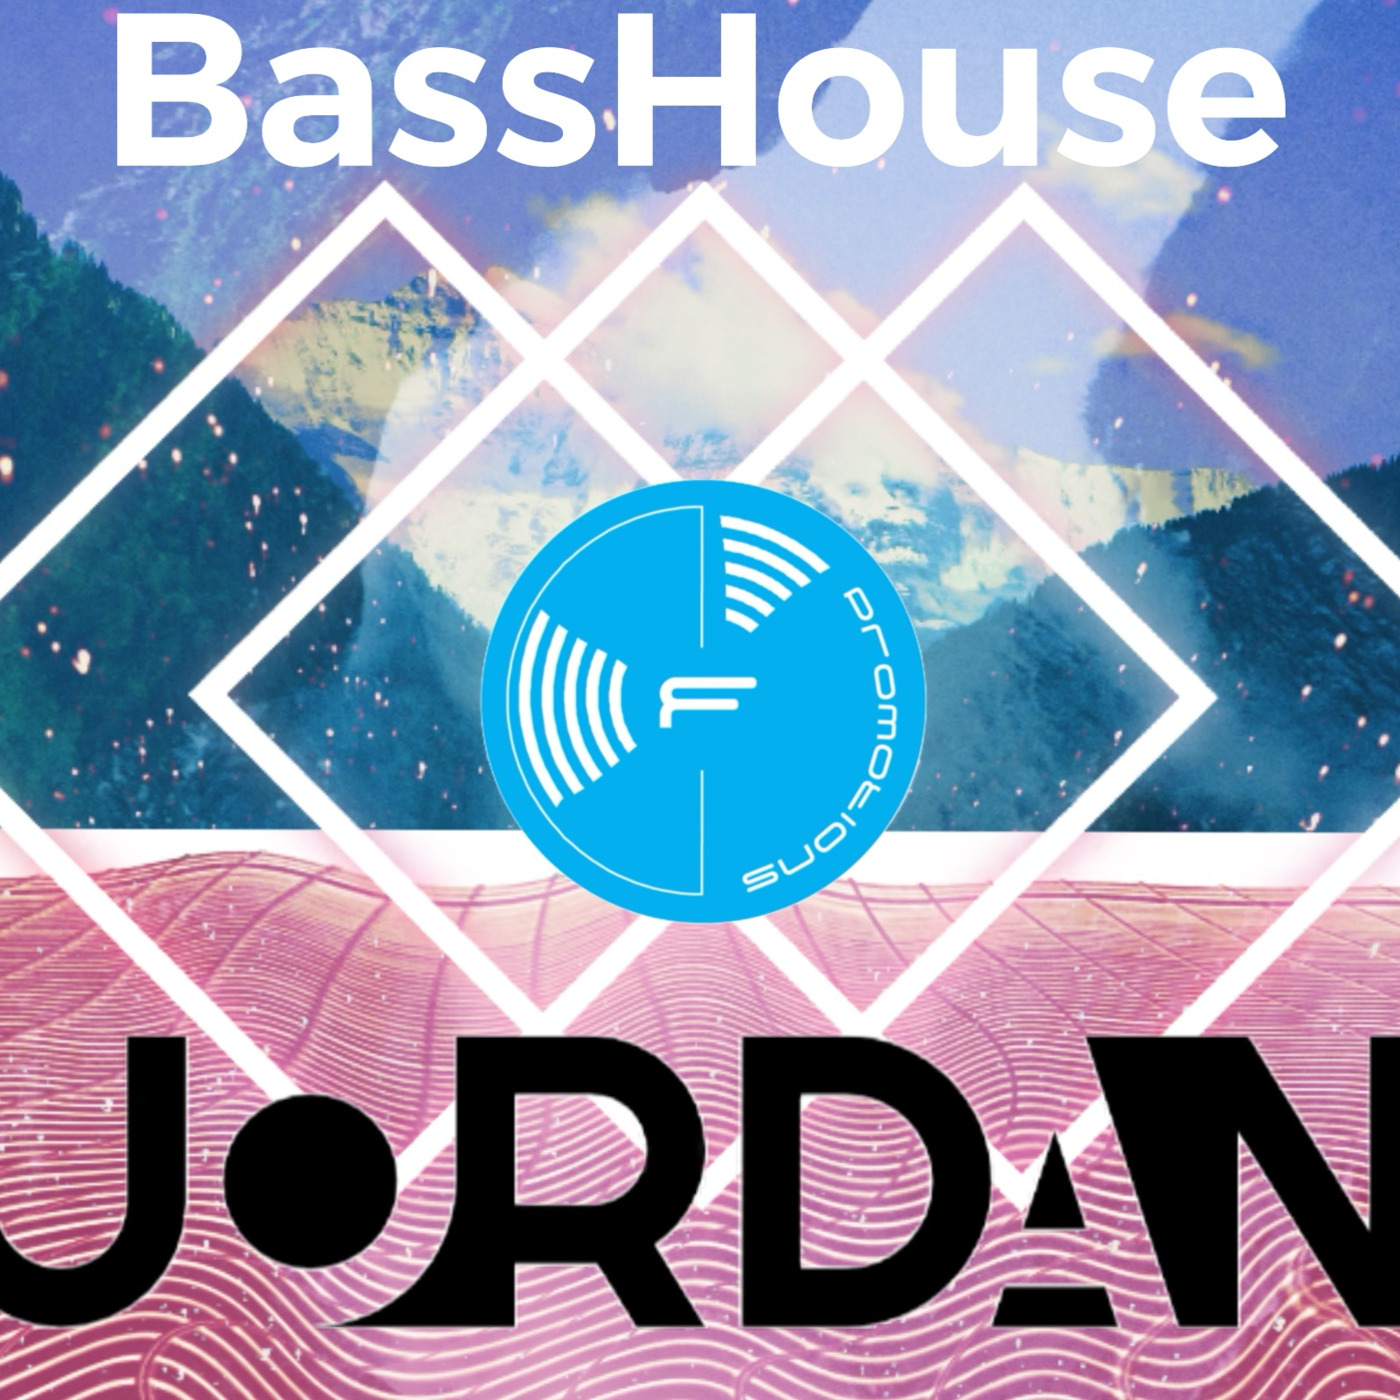 Episode 29: Jordan - Bass House